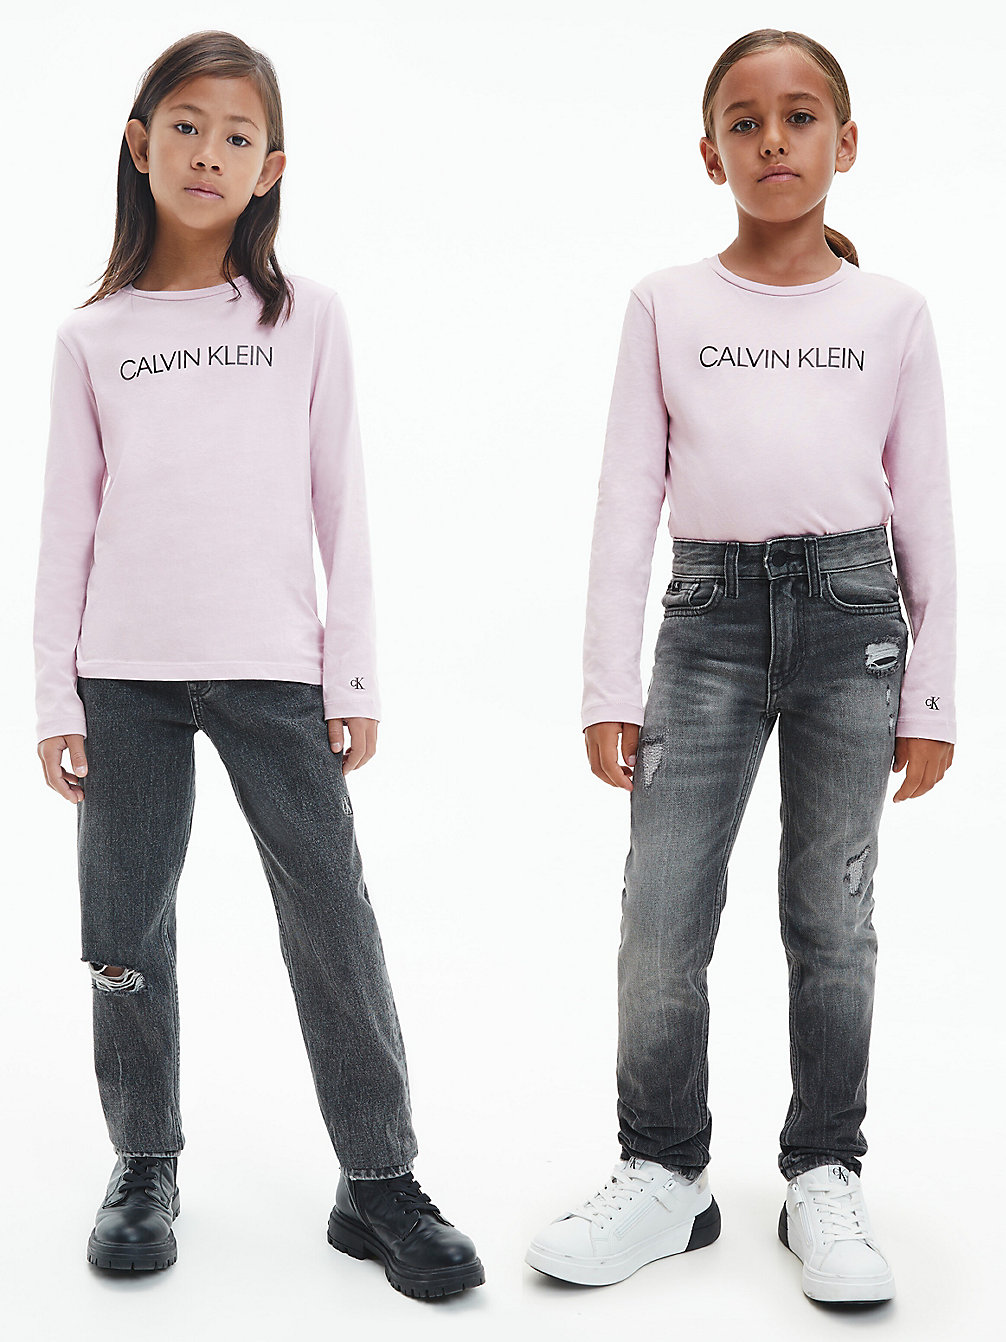 HAWAII ORCHID > Unisex-Langarmshirt > undefined kids unisex - Calvin Klein